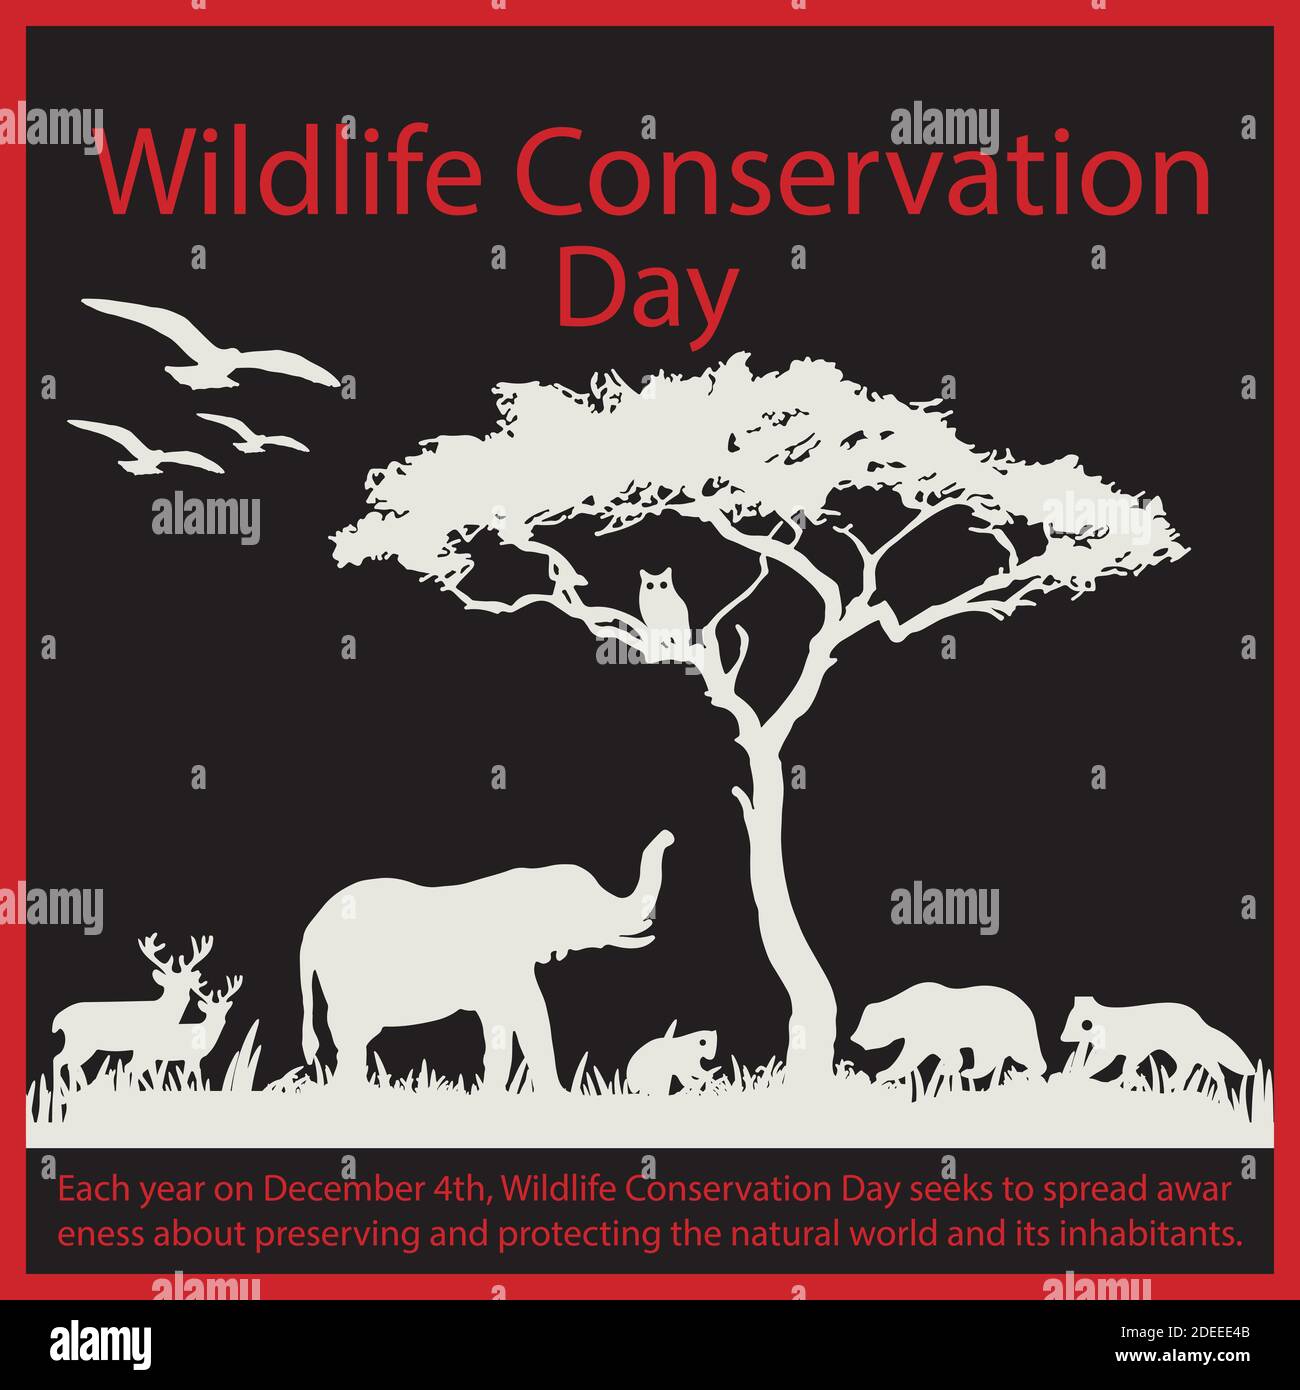 Jedes Jahr am 4. Dezember soll der Wildlife Conservation Day das Bewusstsein für die Erhaltung und den Schutz der Natur und ihrer Bewohner schärfen. Stock Vektor